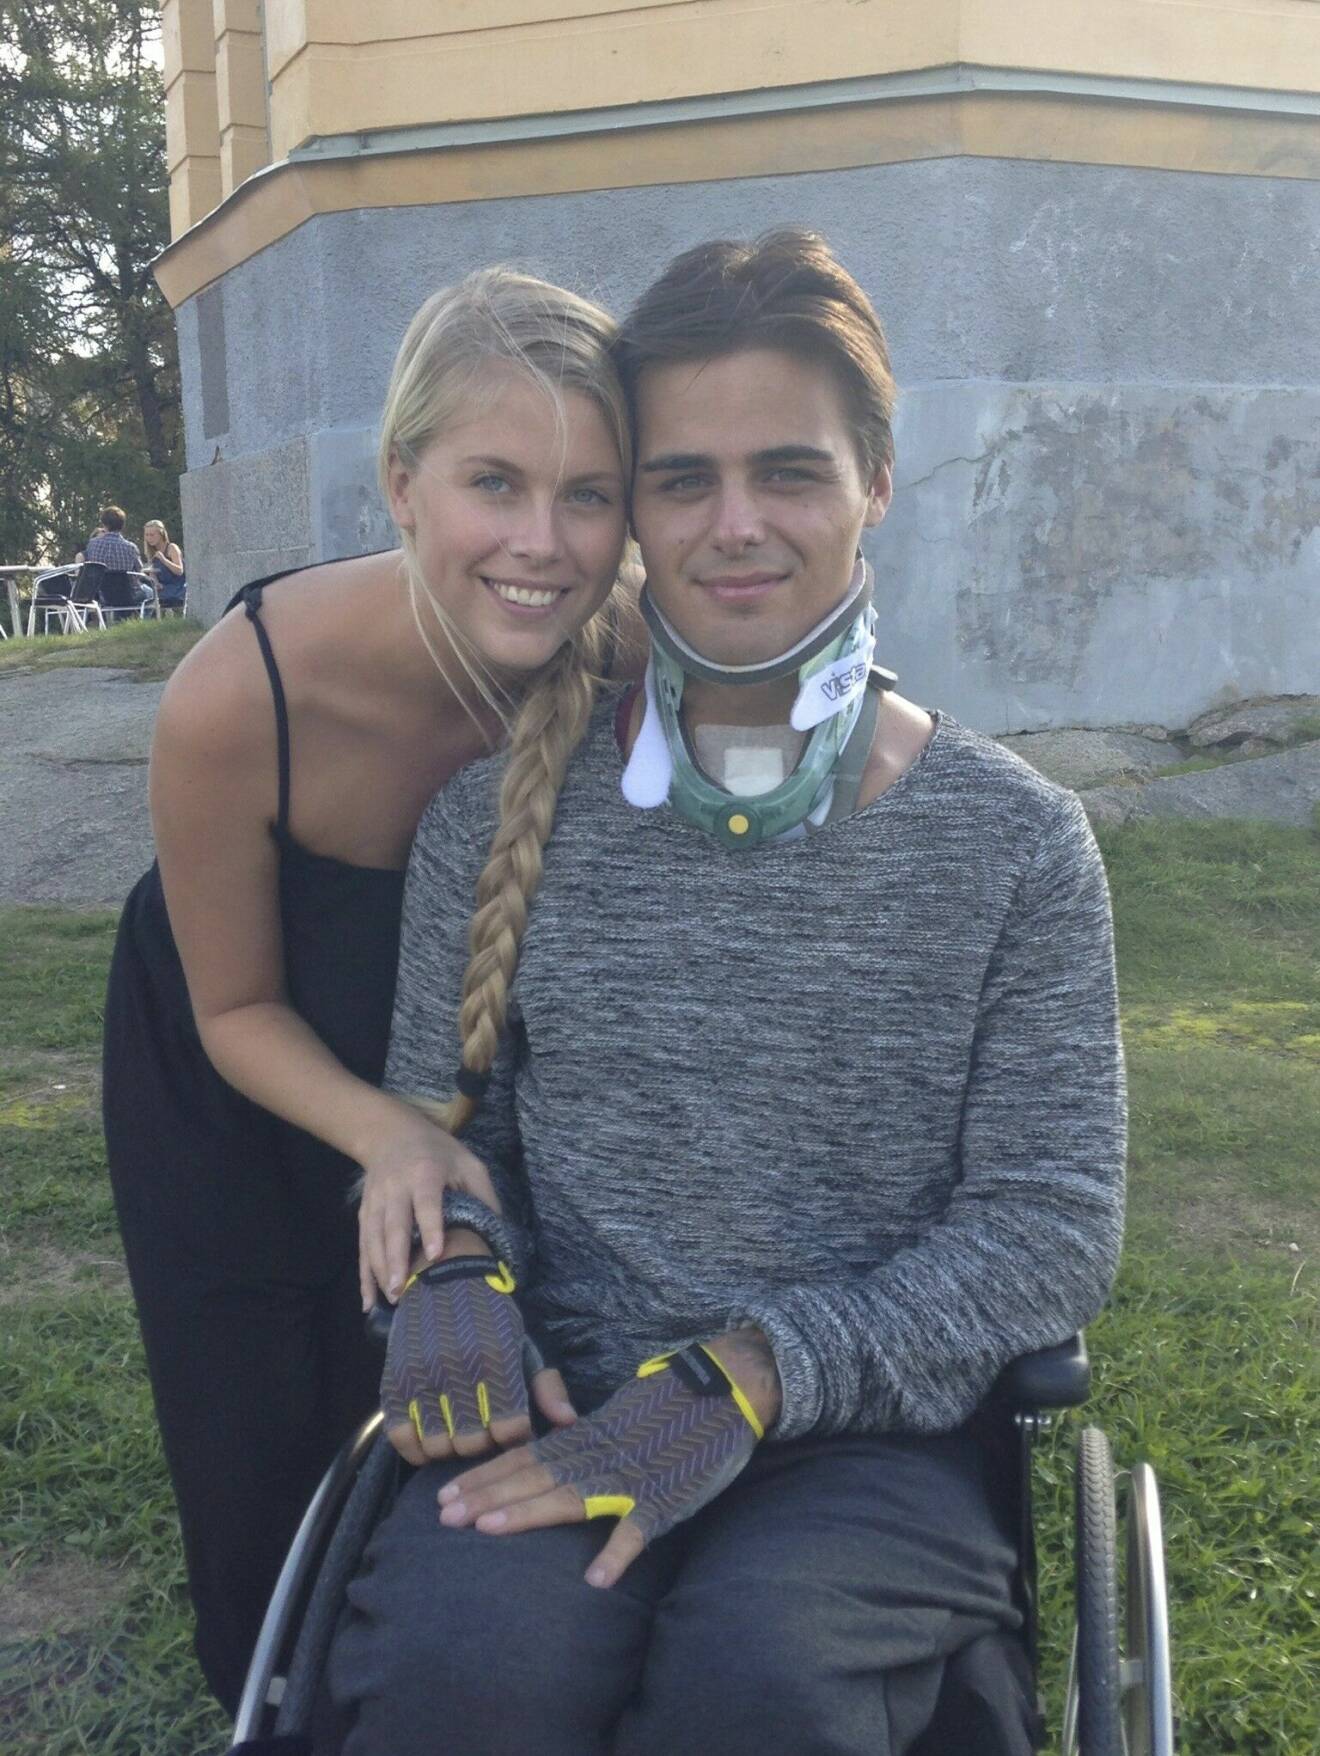 Jonathan Goding Schill en tid efter olyckan, i rullstol, och fortfarande med nackkrage. Josefine Schill finns vid hans sida.